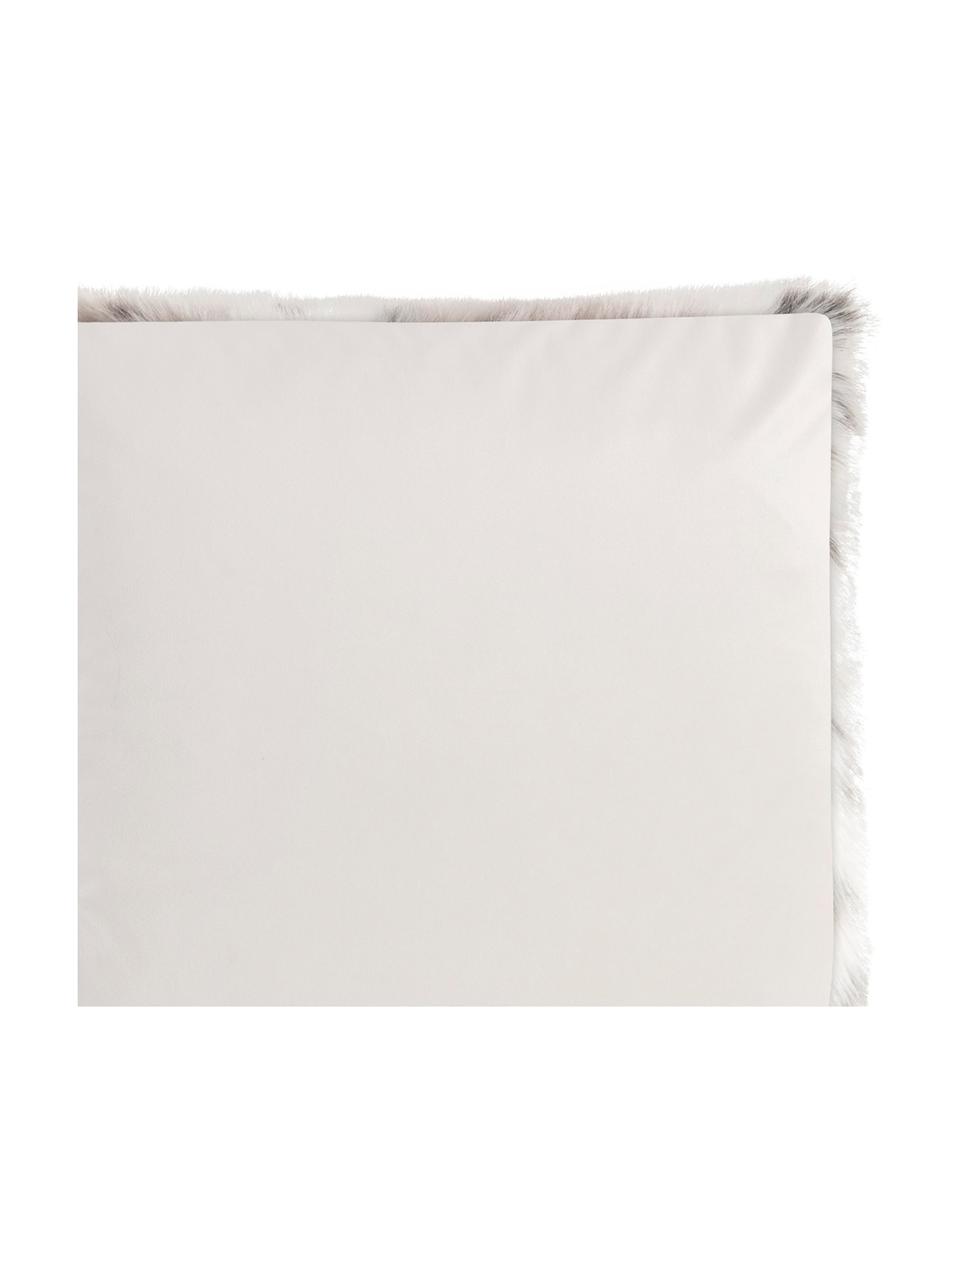 Zachte plaid Skins van imitatieleer in sneeuwluipaardlook, Bovenzijde: 60% polyacryl, 40% polyes, Onderzijde: polyester fluweel, Bovenzijde: wit, lichtbruin, bruin. Onderzijde: ivoorkleurig, B 150 x L 200 cm